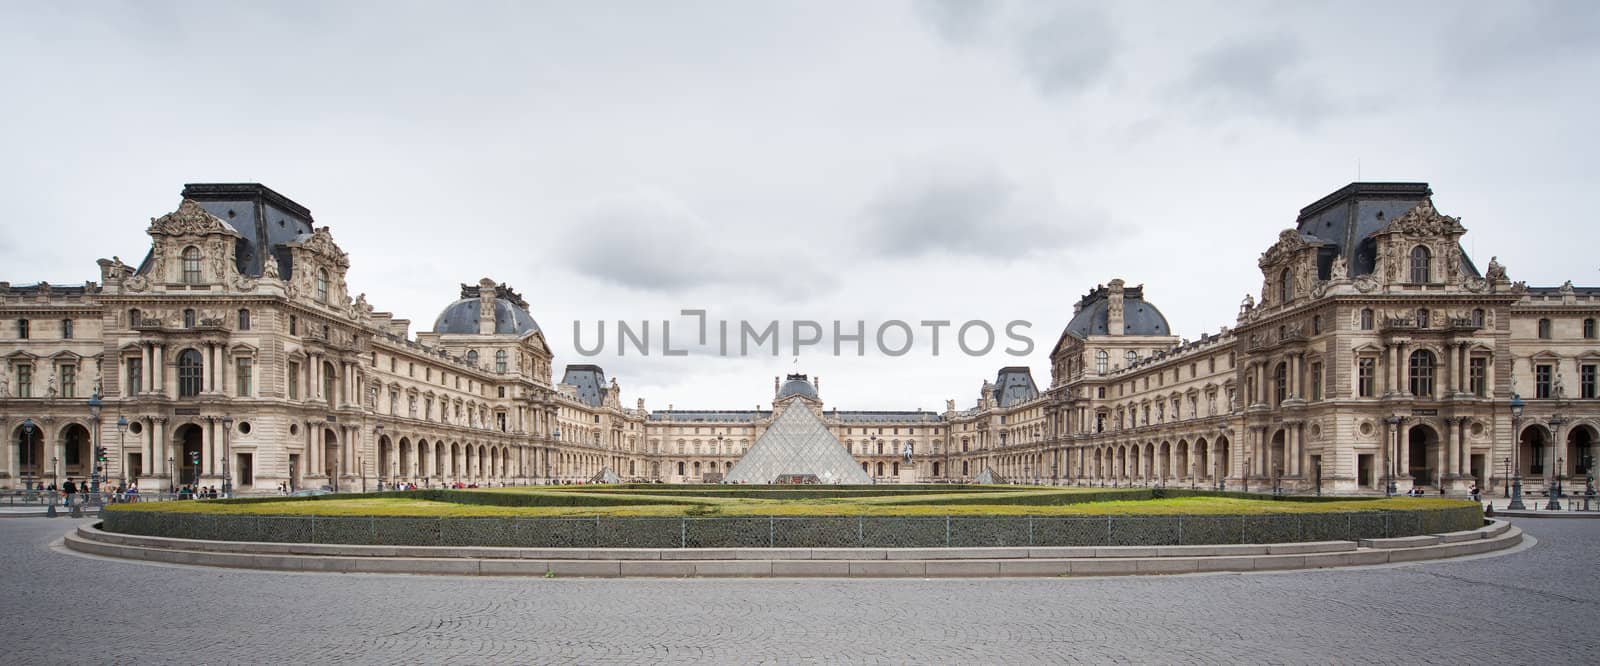 Louvre Museum, the most famous parisian museum